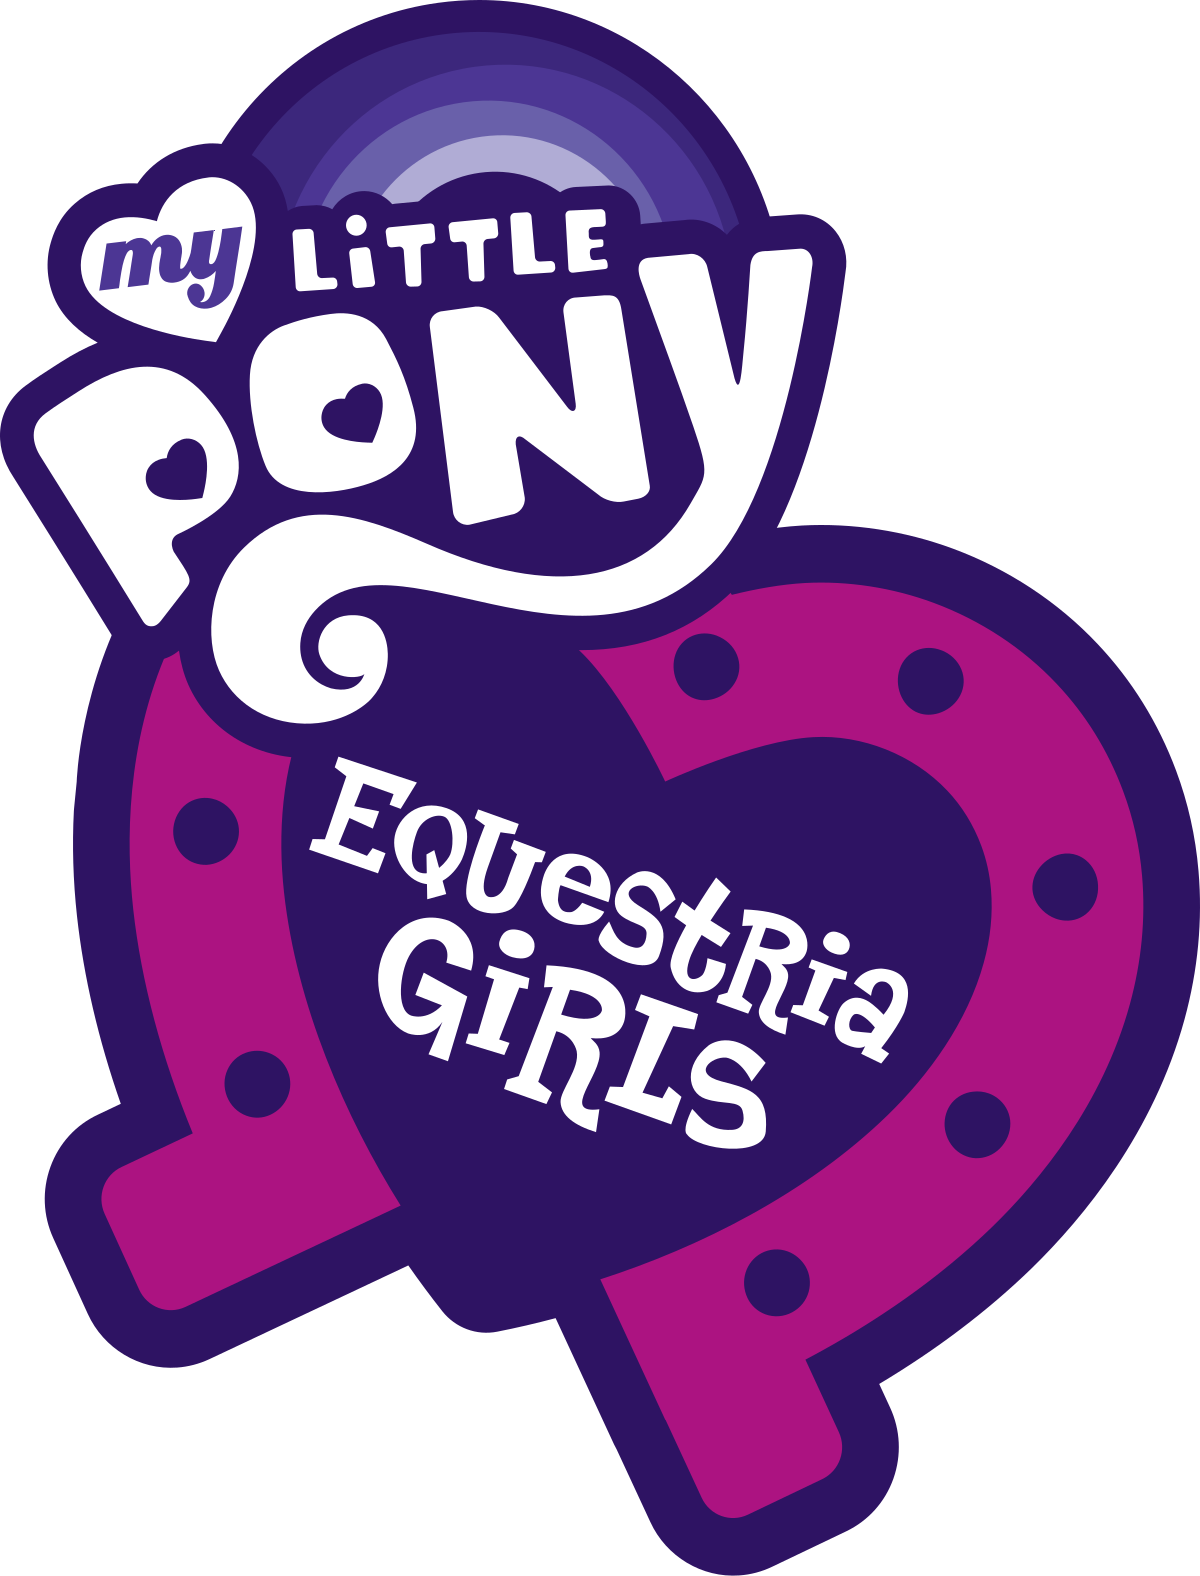 Desenho 'My Little Pony' vai ganhar filme em 2017